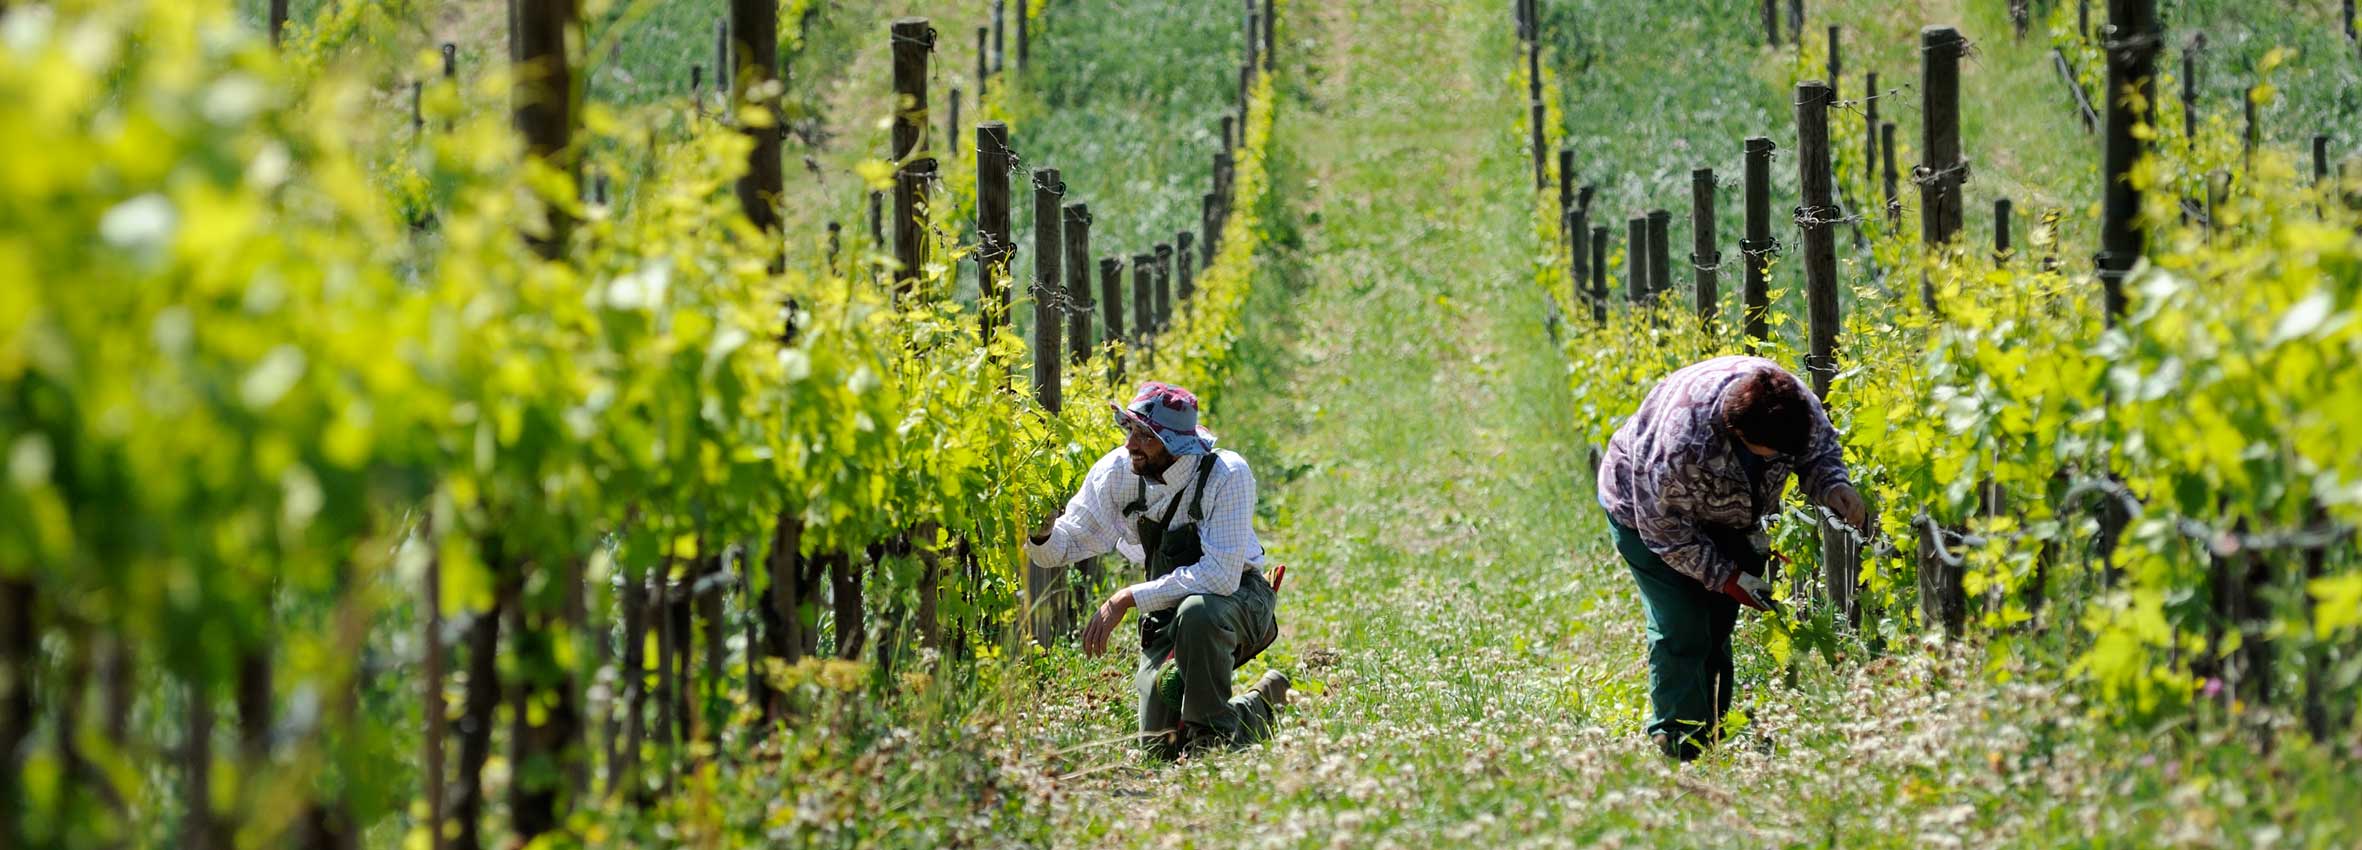 Felsina agriculture-vineyard